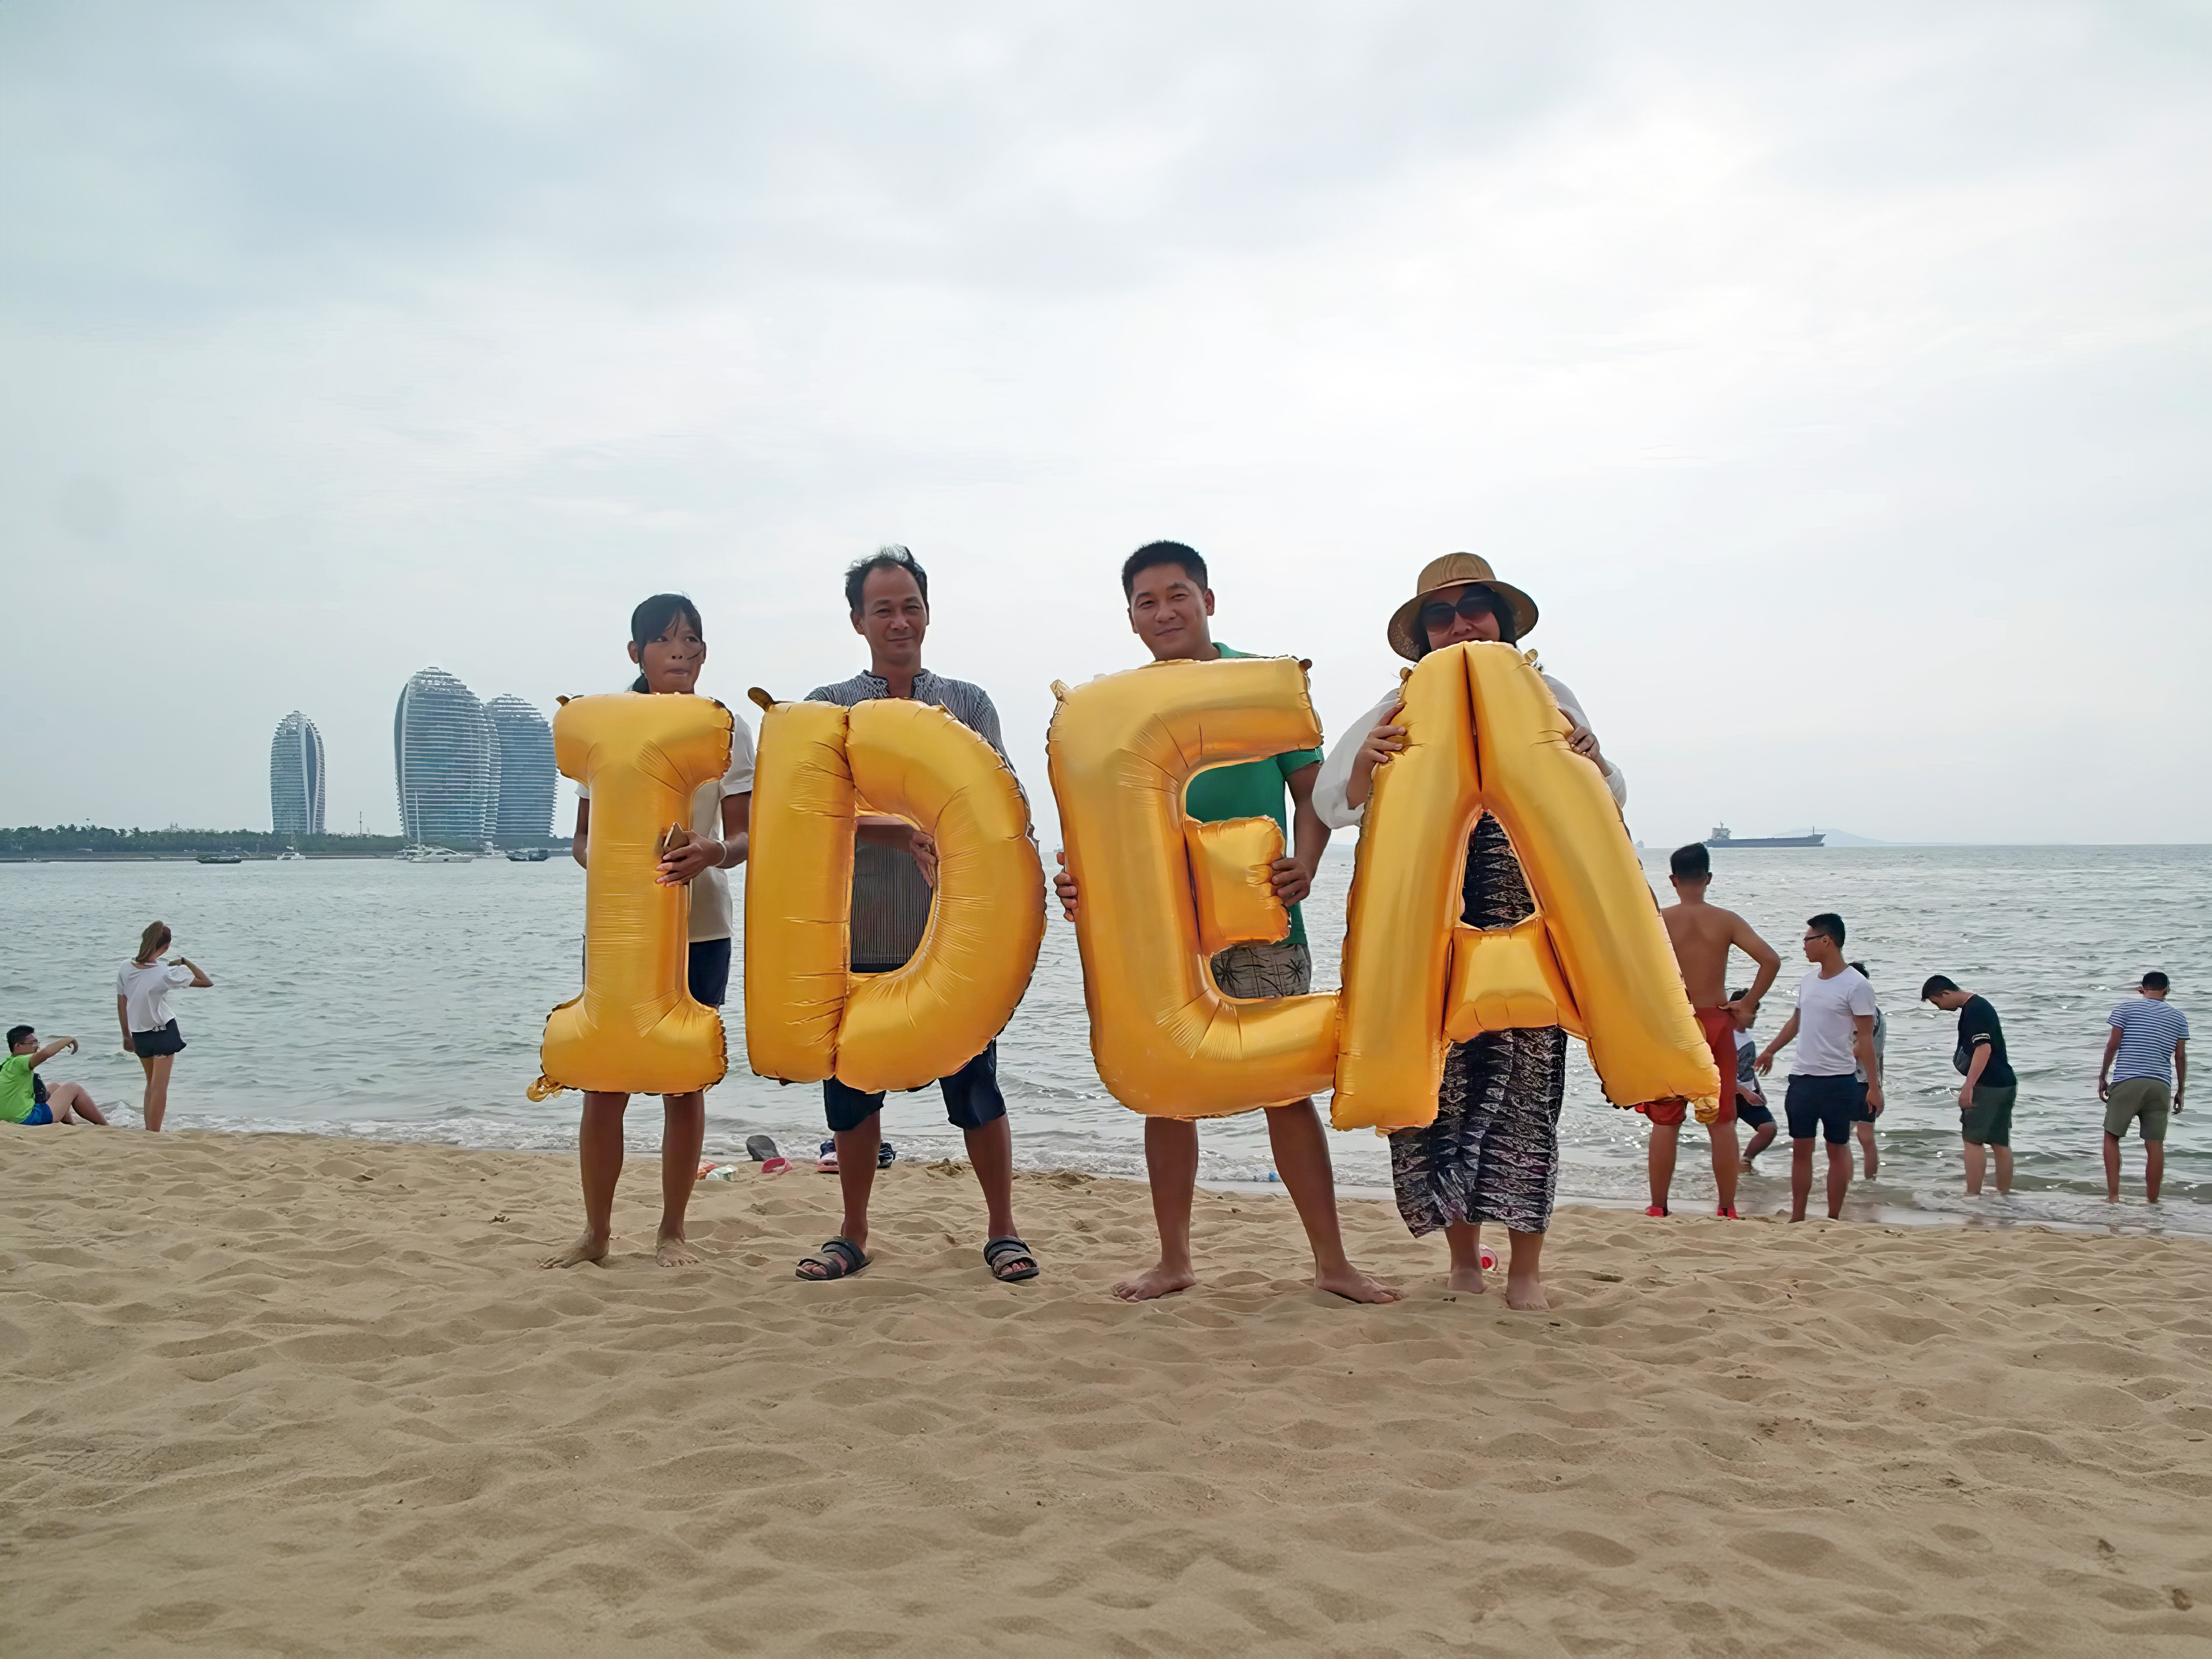 China, Sanya, Sanya Bay beach (海月广场) - Idea, Silence was Golden, gold balloons